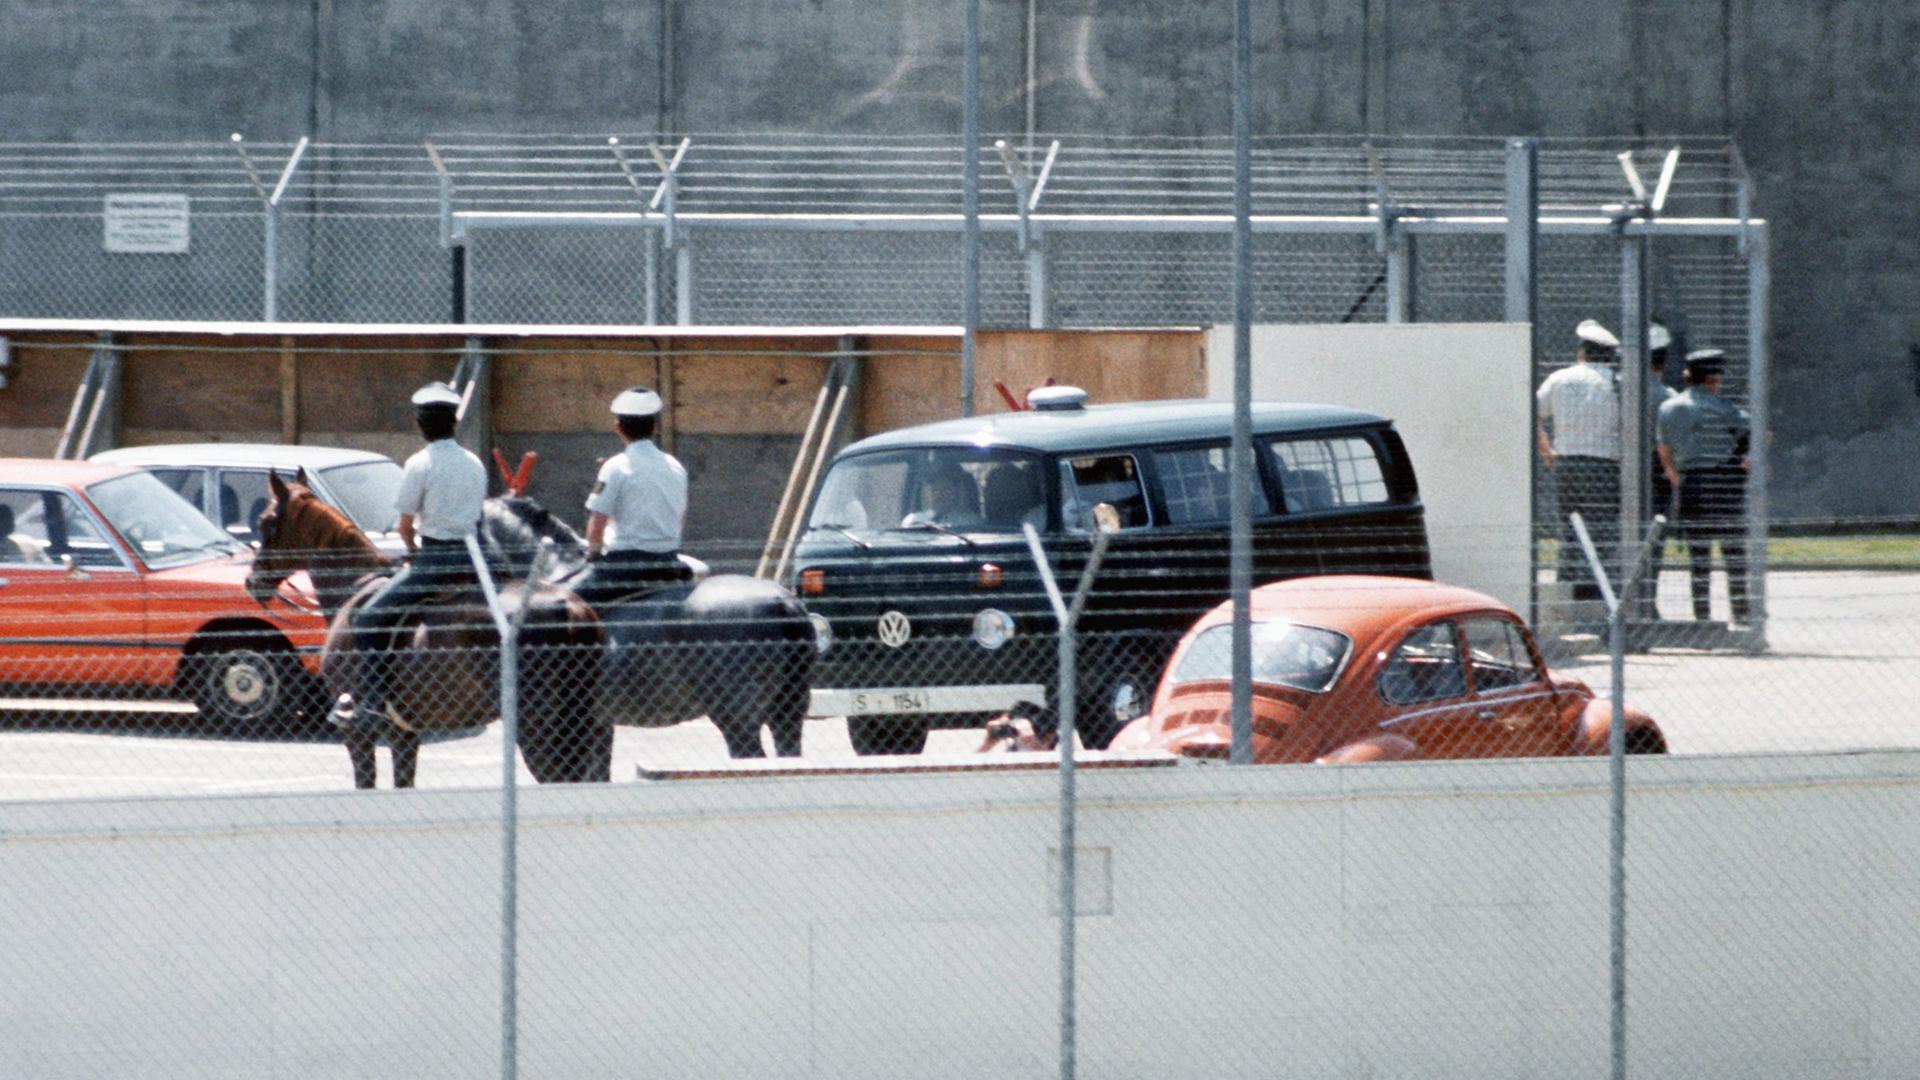 Während des Prozesses gegen die RAF-Terroristen Andreas Baader, Ulrike Meinhof, Gudrun Ensslin und Jan-Carl Raspe in Stuttgart-Stammheim bewachen berittene Polizisten am 21. Mai 1975 die Ausfahrt des Gefängnisbereichs.